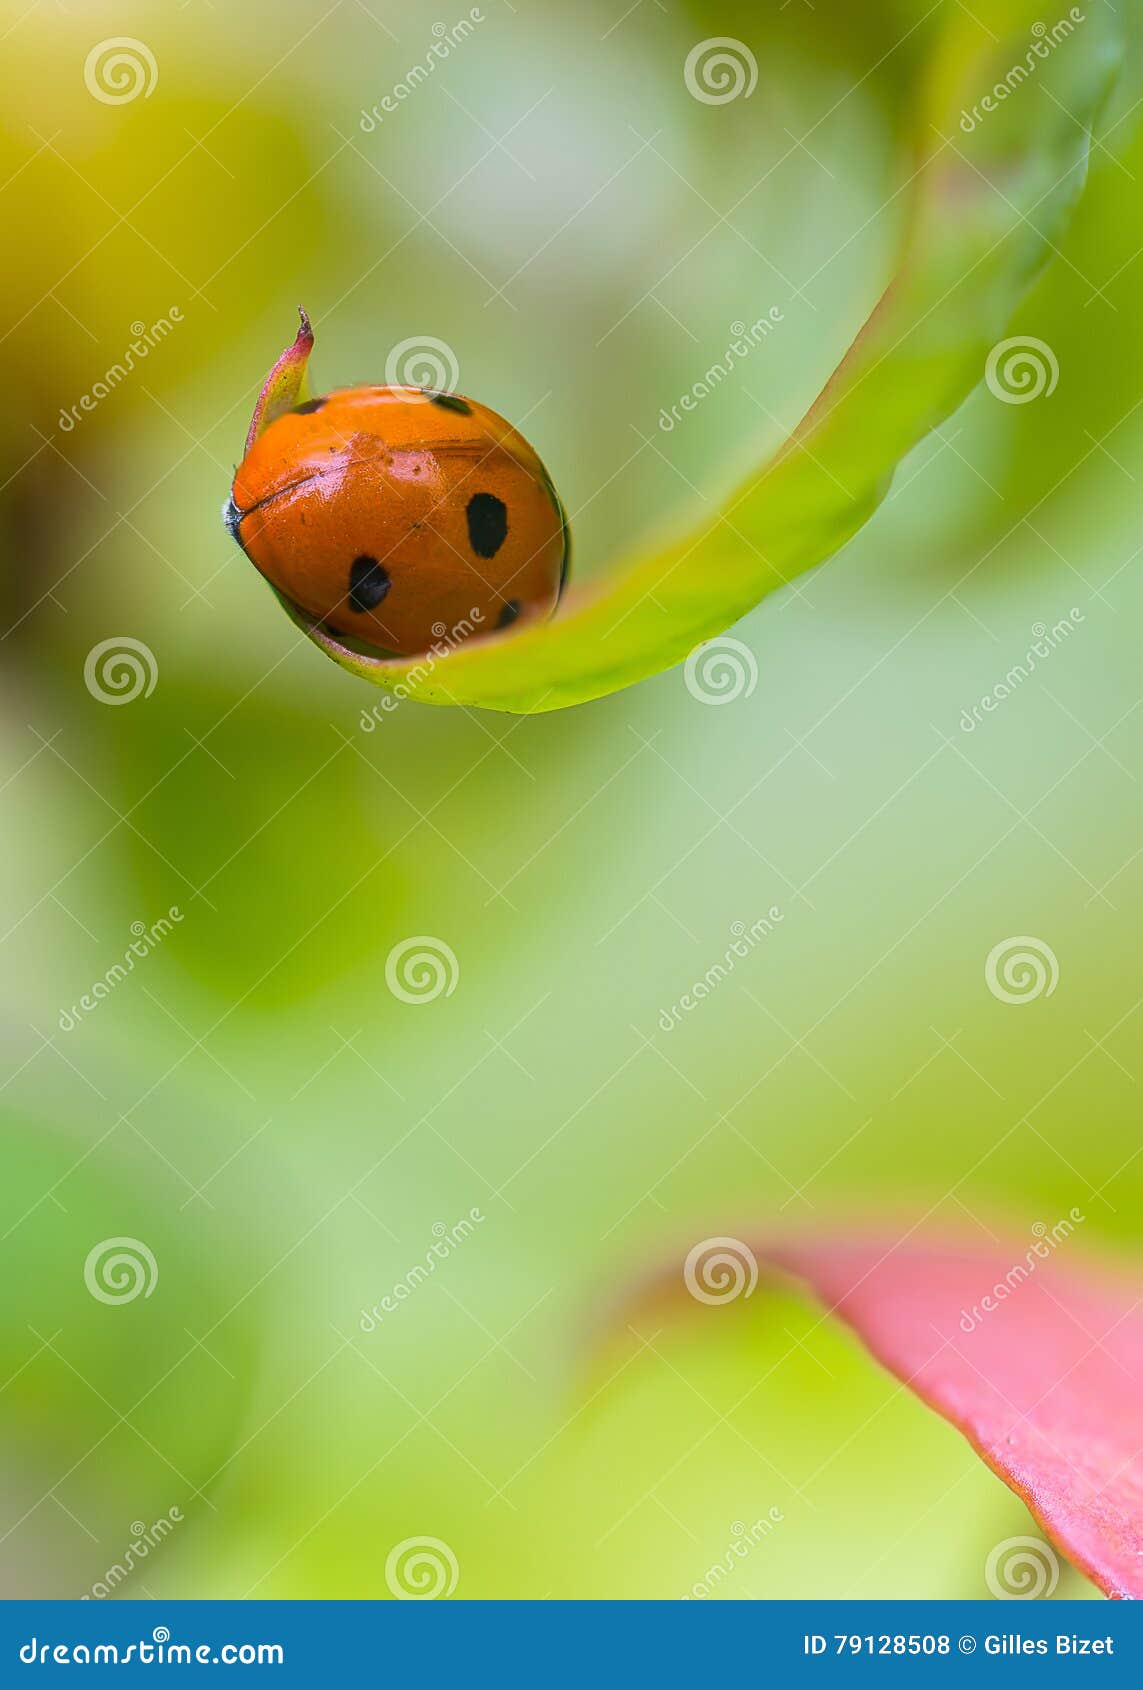 my little ladybug in my garden